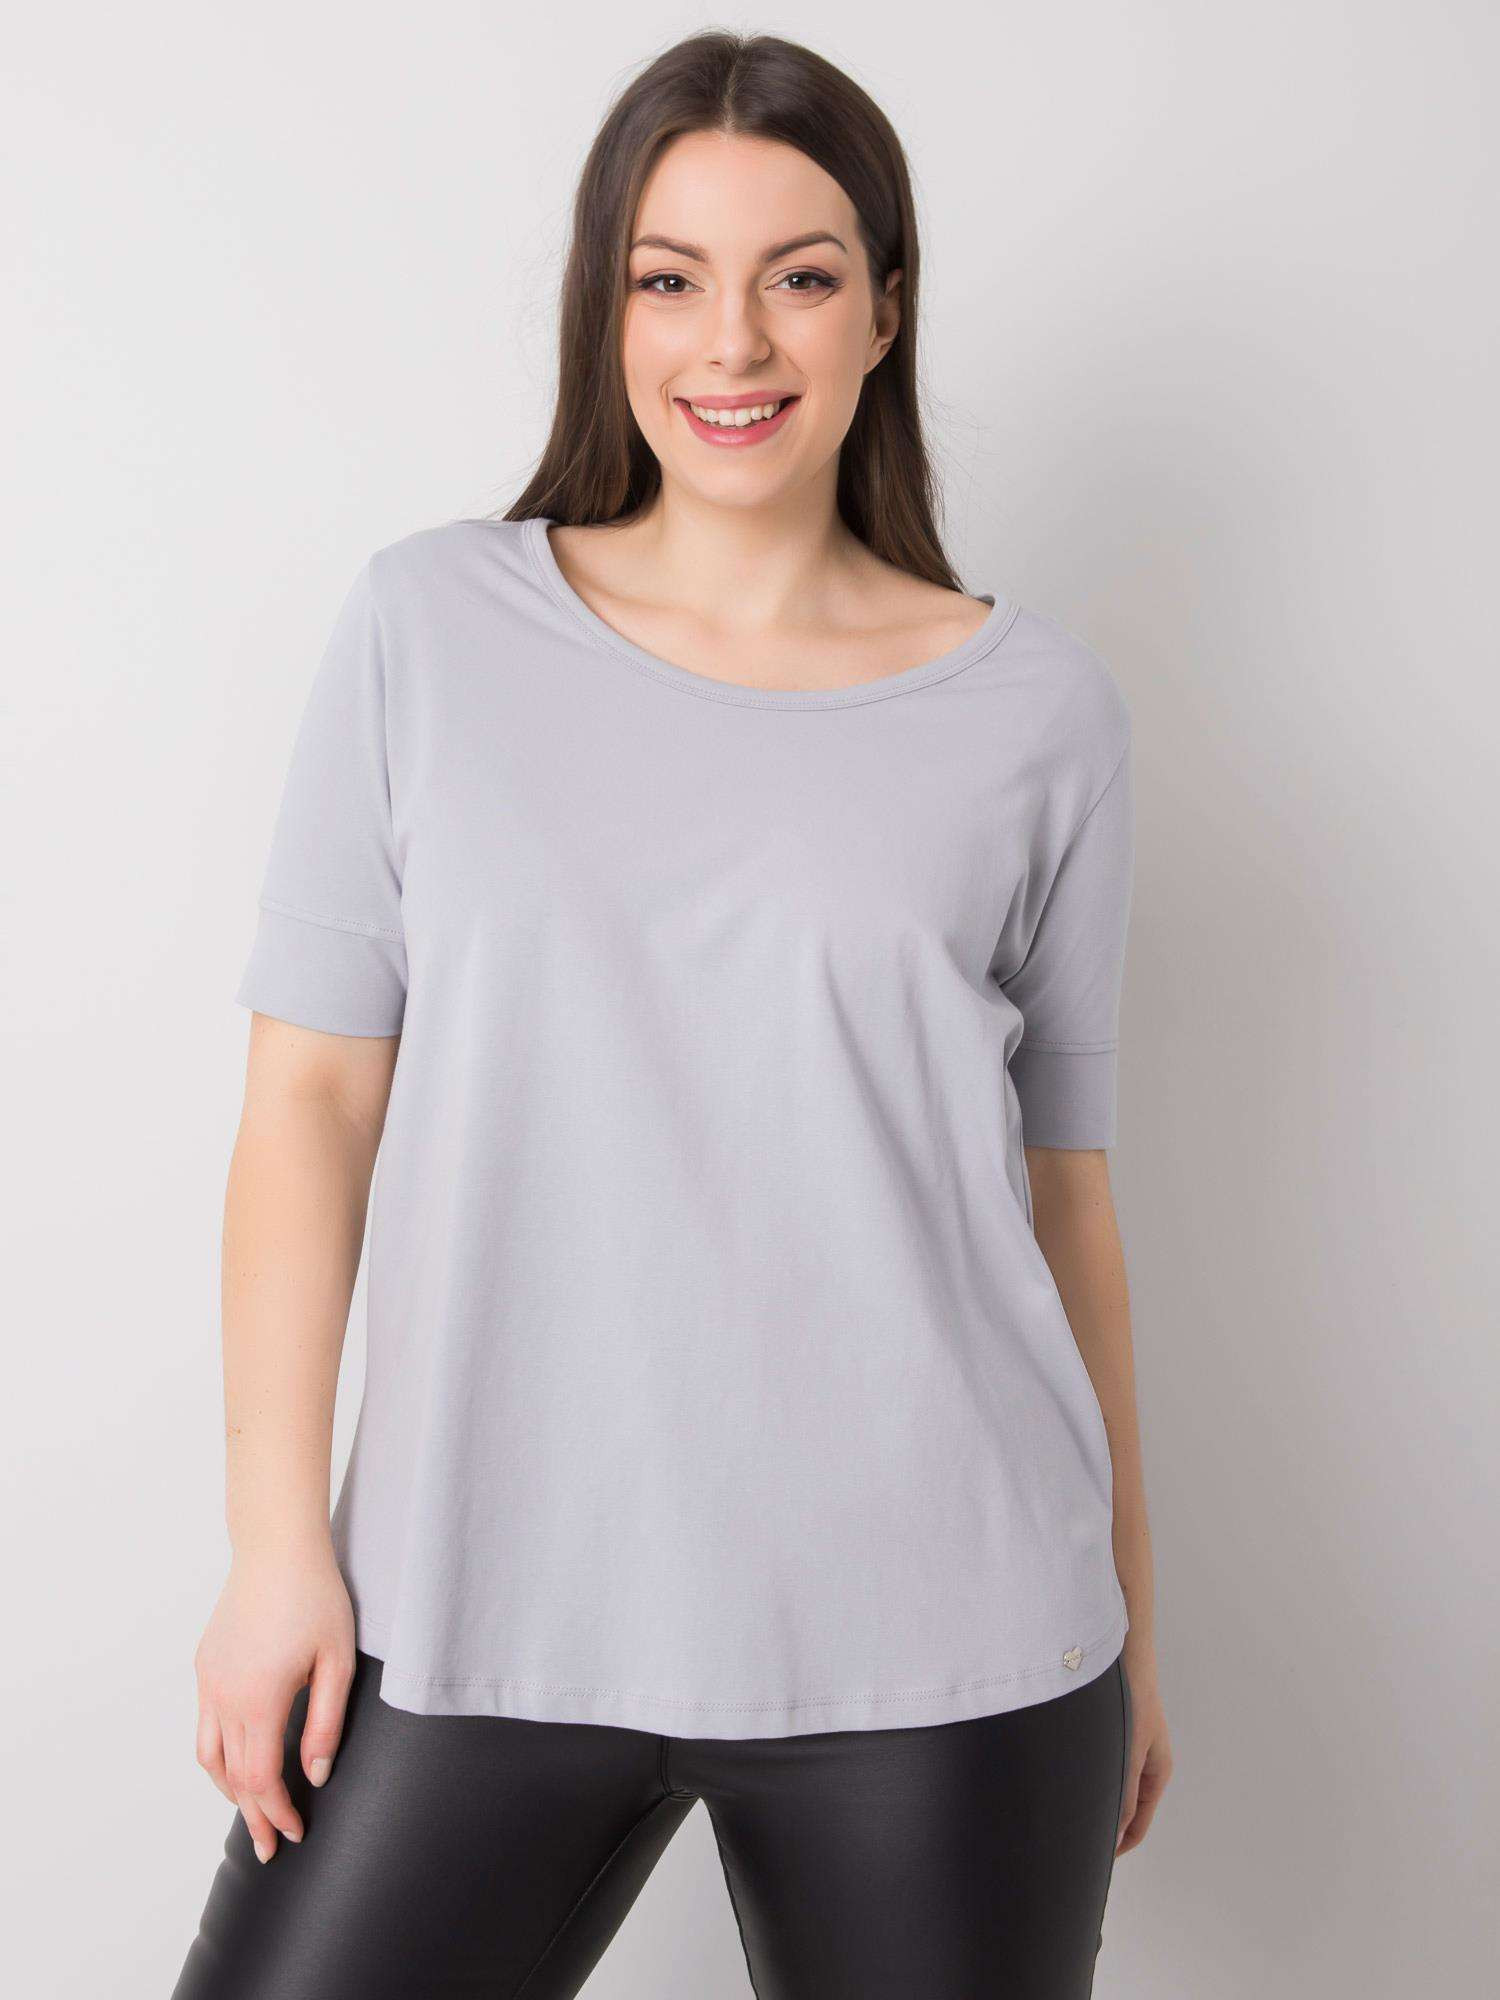 Dámské světle šedé bavlněné tričko nadměrné velikosti XL